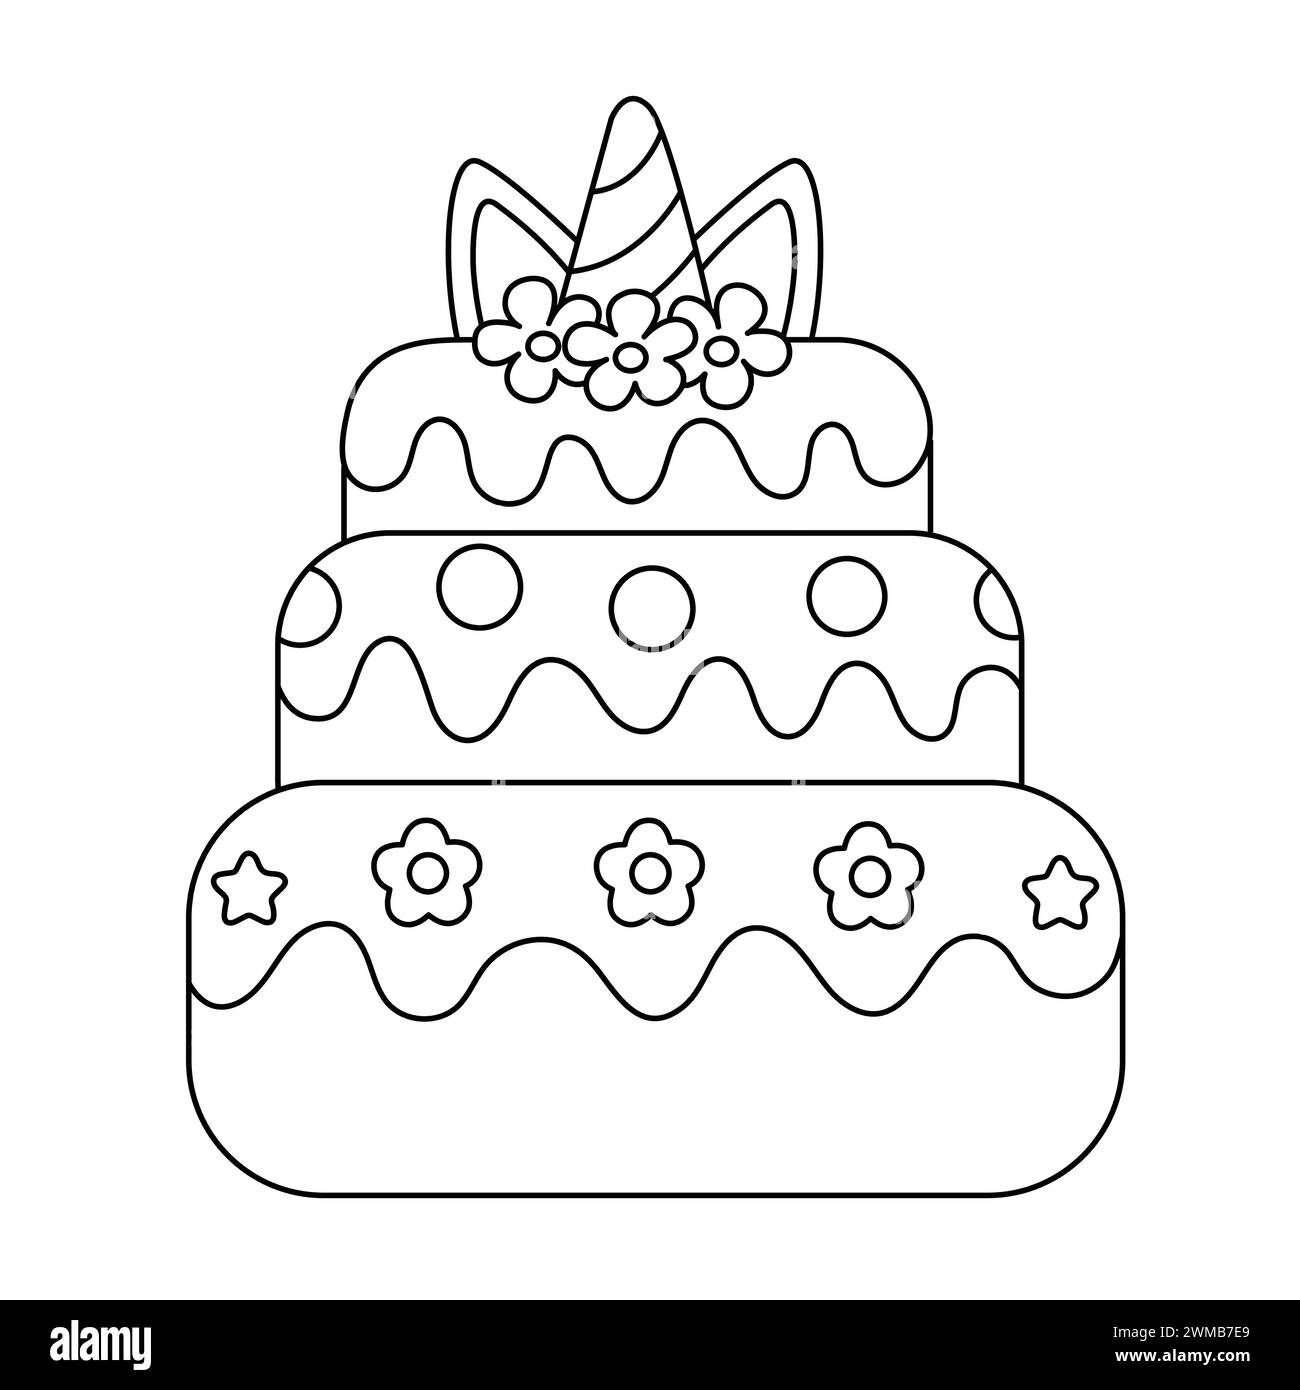 Einhornkuchen Ausmalseite. Färbung Cartoon Geburtstagskuchen Mit Kerzen. Desserts Malbuch Illustration. Doodle-Stil. Tortendekoration Stock Vektor